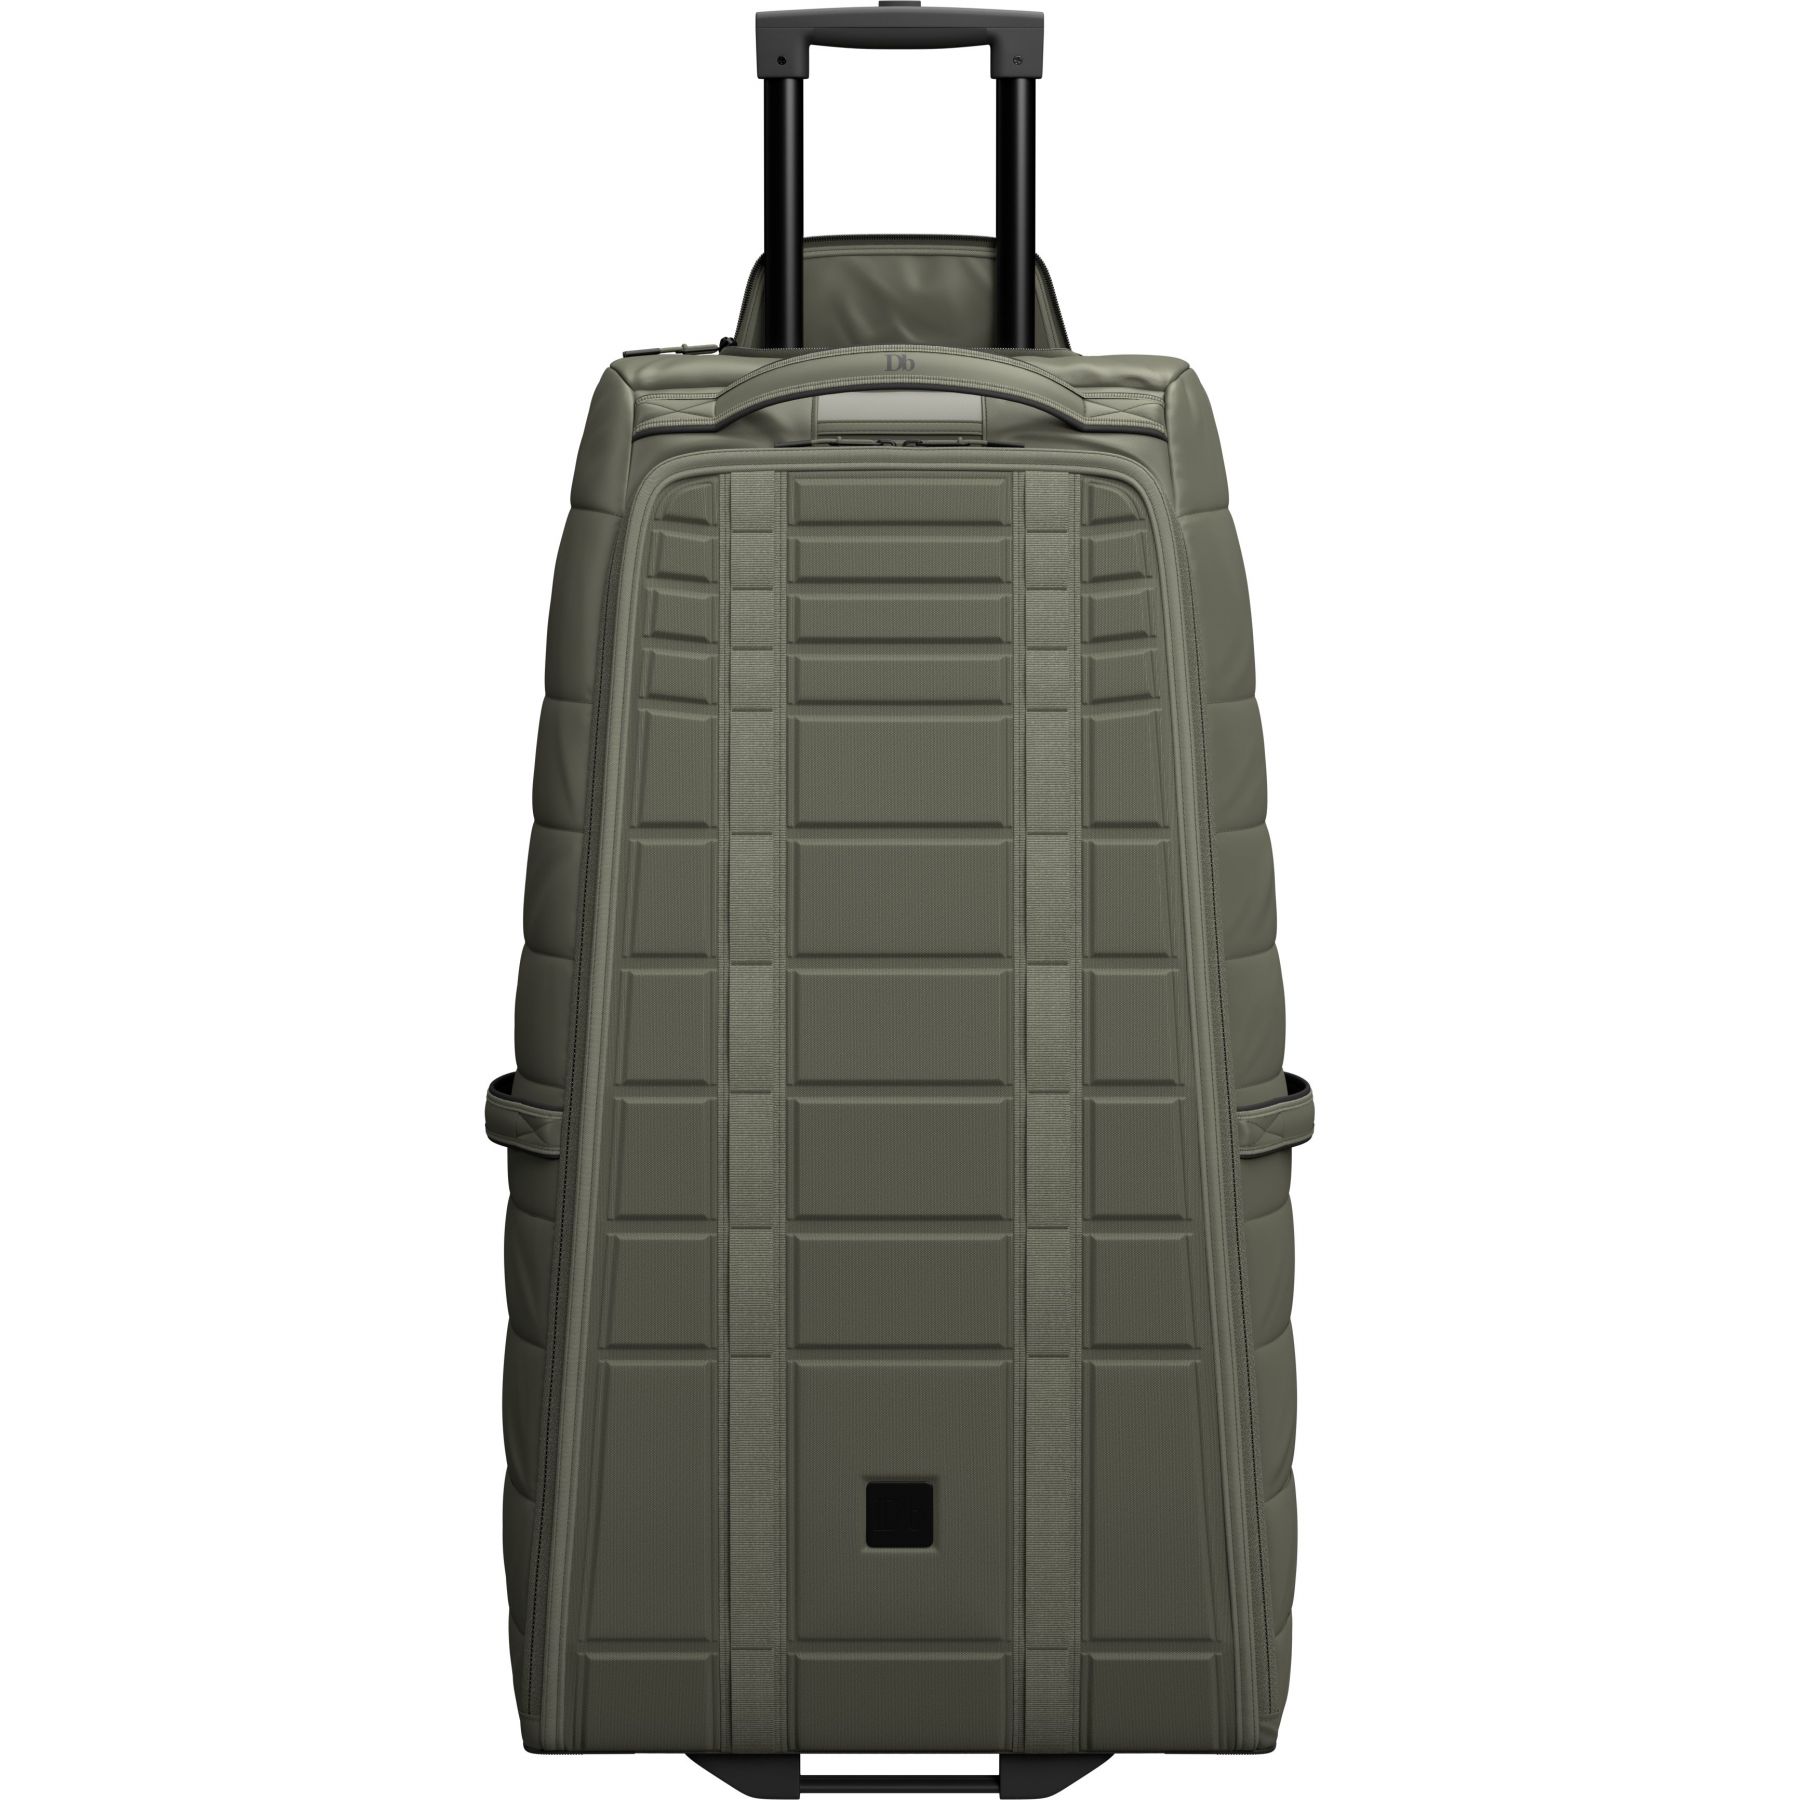 Brug Db Hugger Roller Bag, 90L, moss green til en forbedret oplevelse